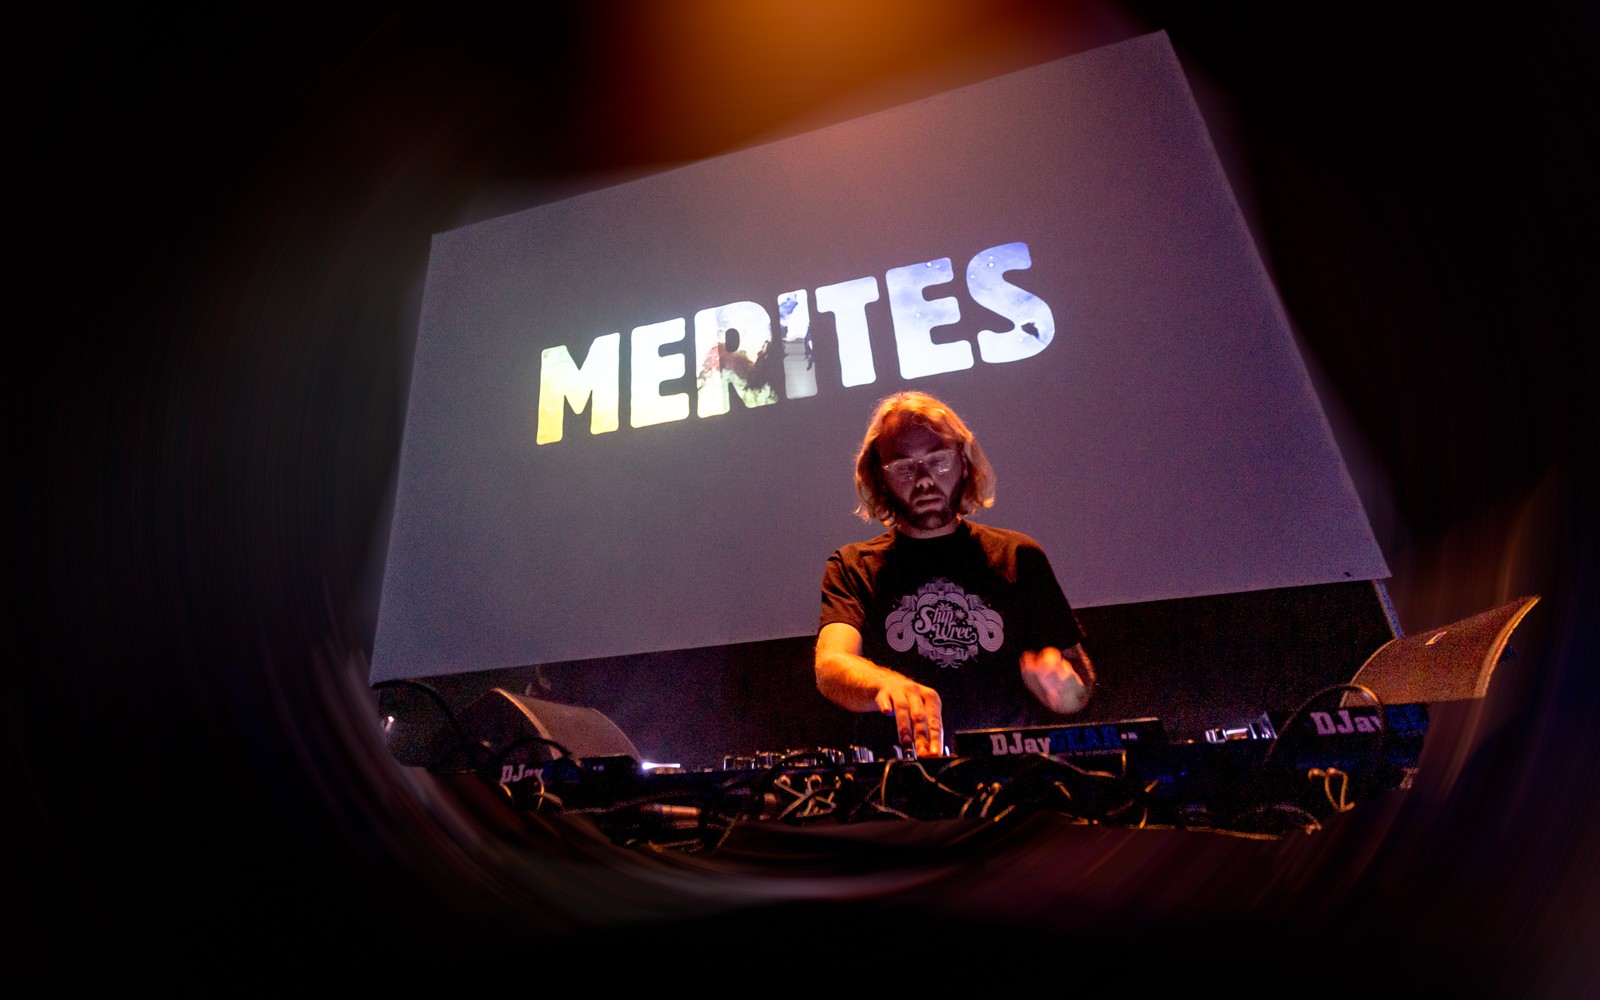 Merites